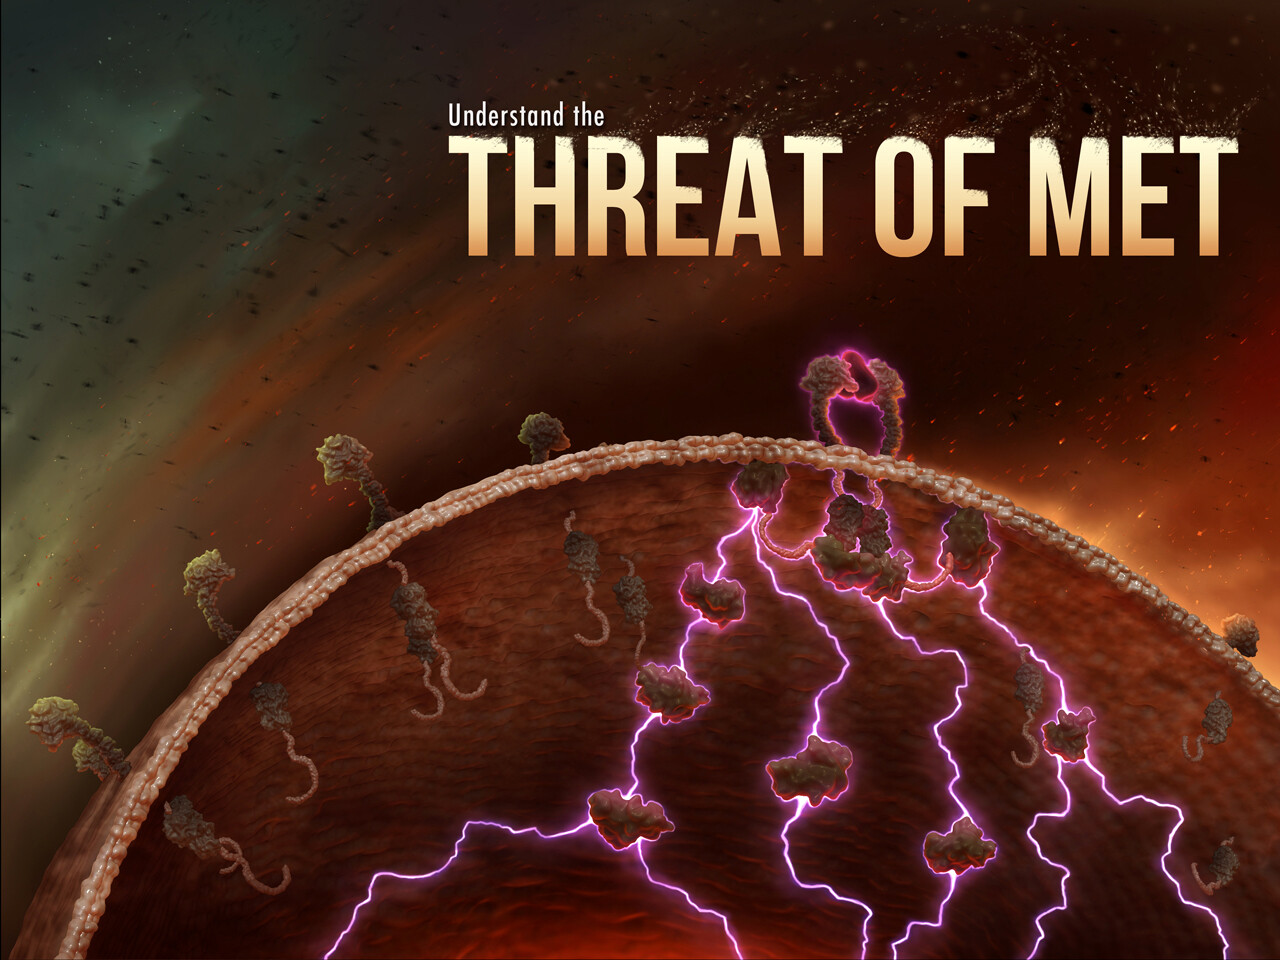 Threat of MET